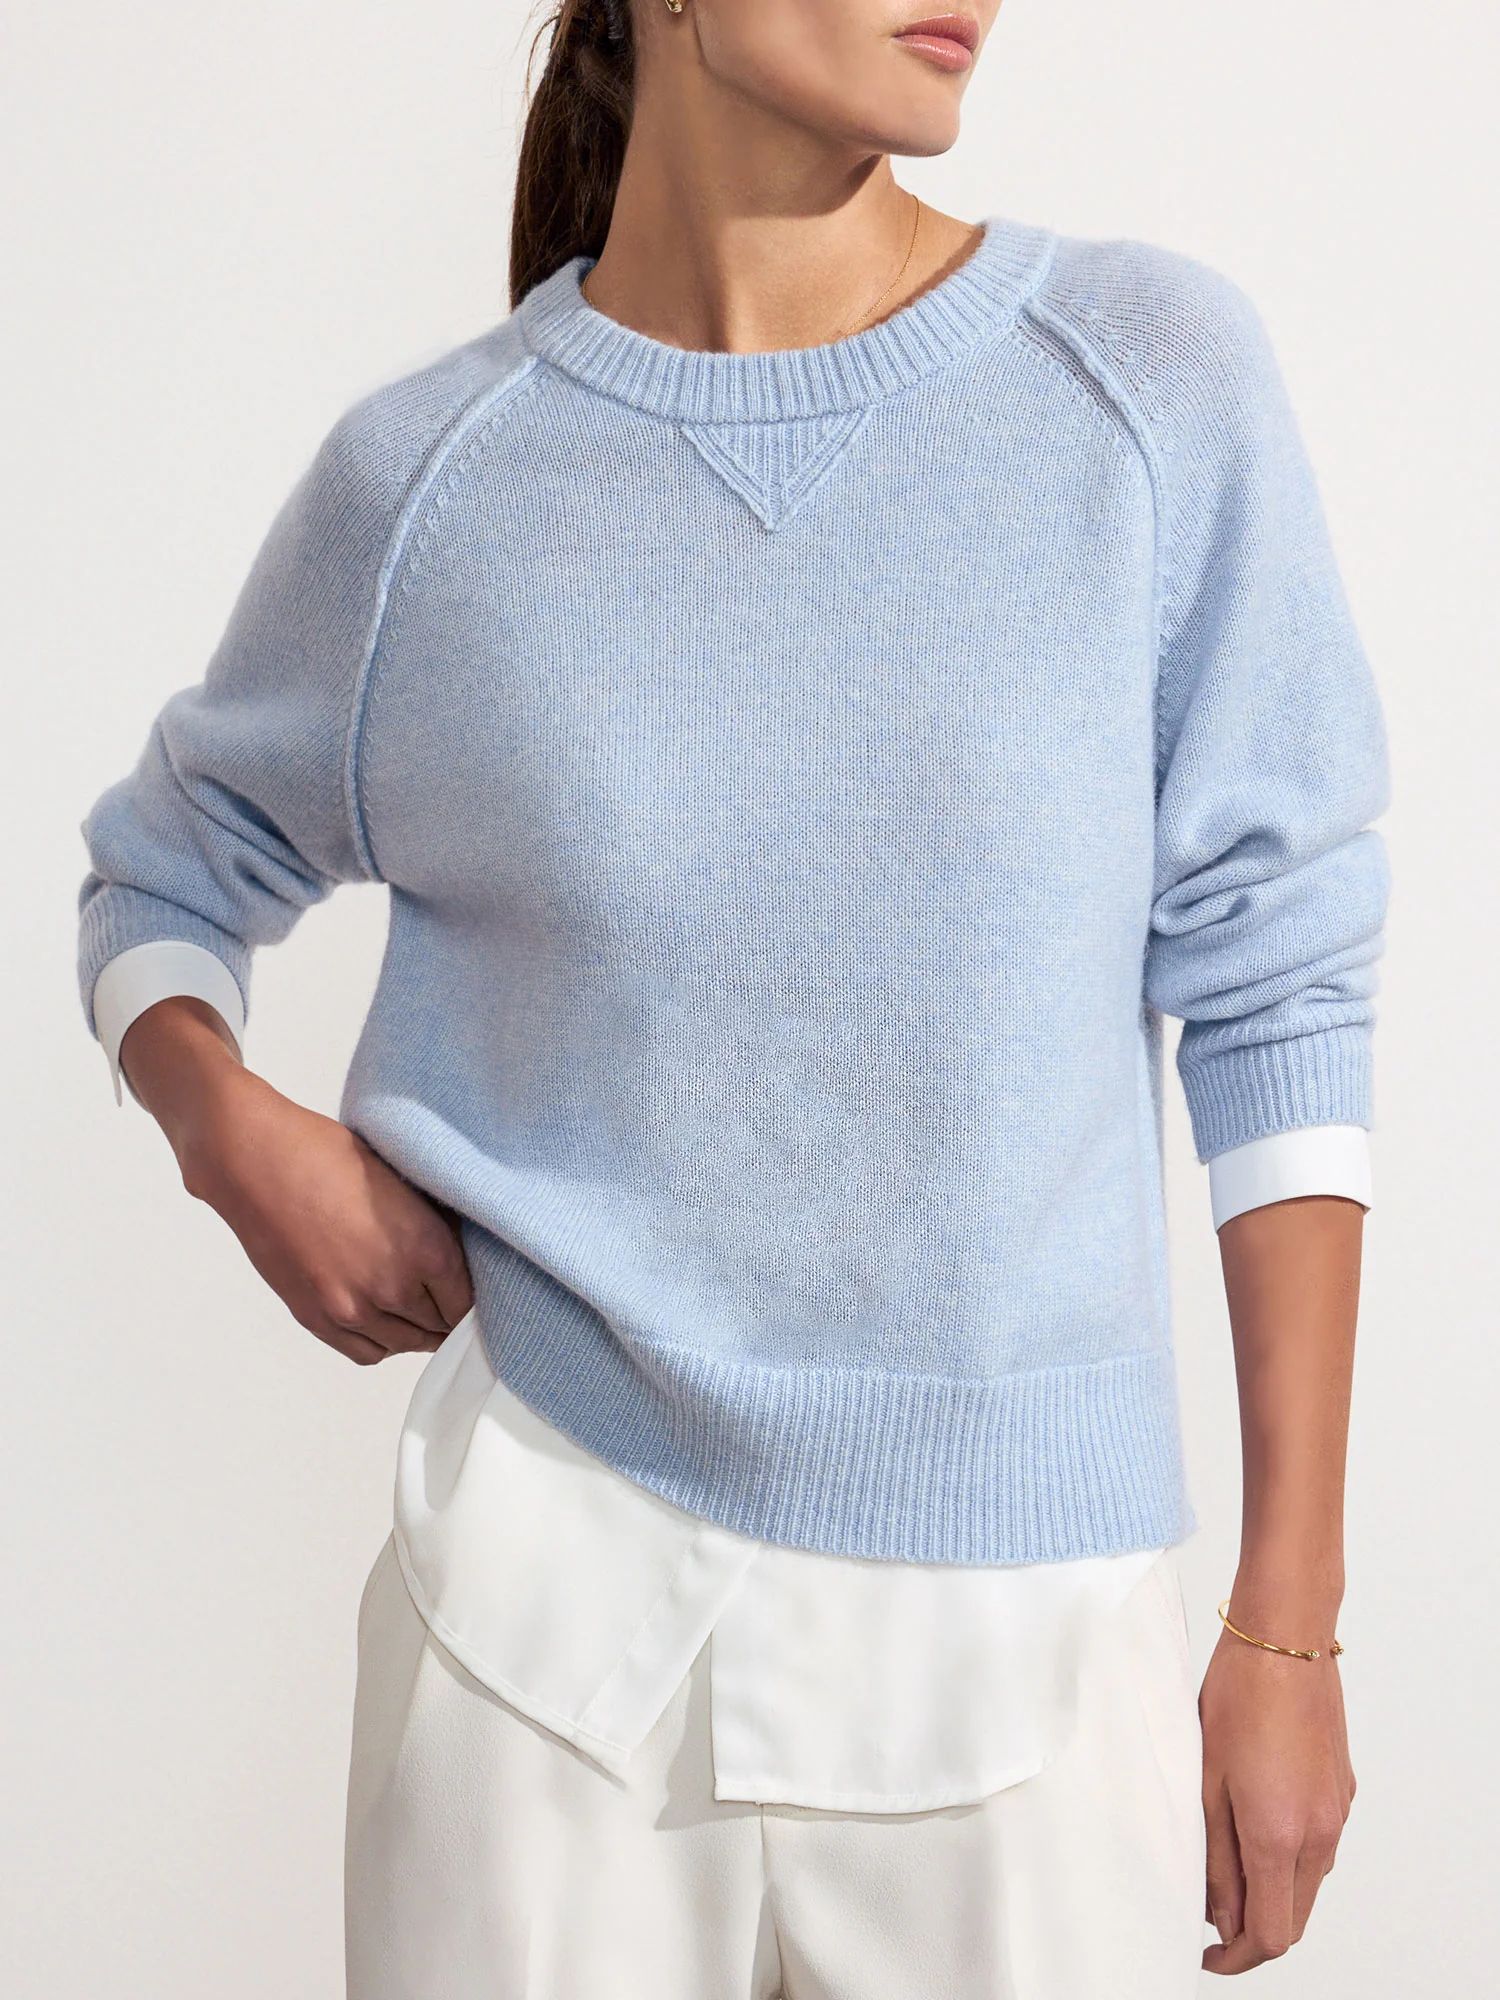 Brochu Walker | Women's Knit Sweatshirt Looker in Skye Blue Mélange with White | Brochu Walker